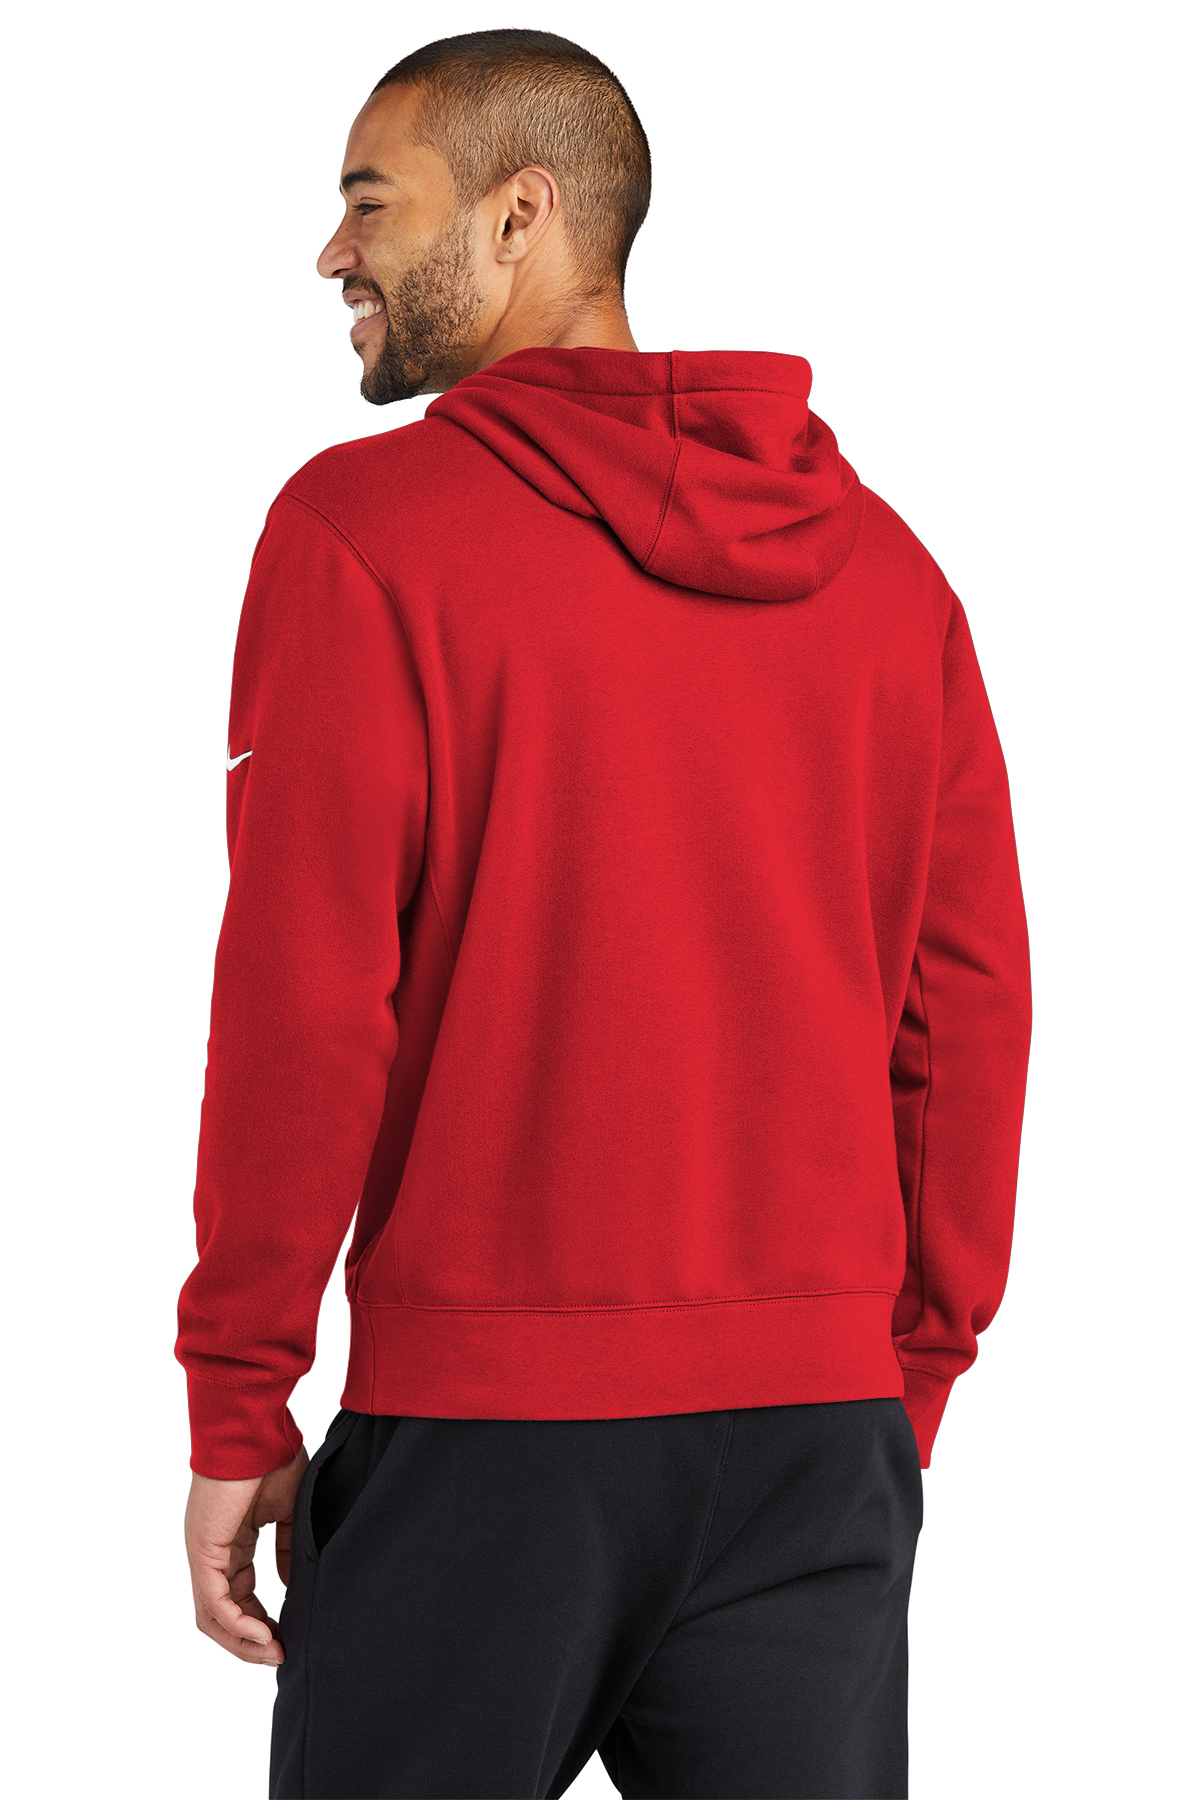 SanMar Pullover Product Fleece | Hoodie Nike Club | Swoosh Sleeve